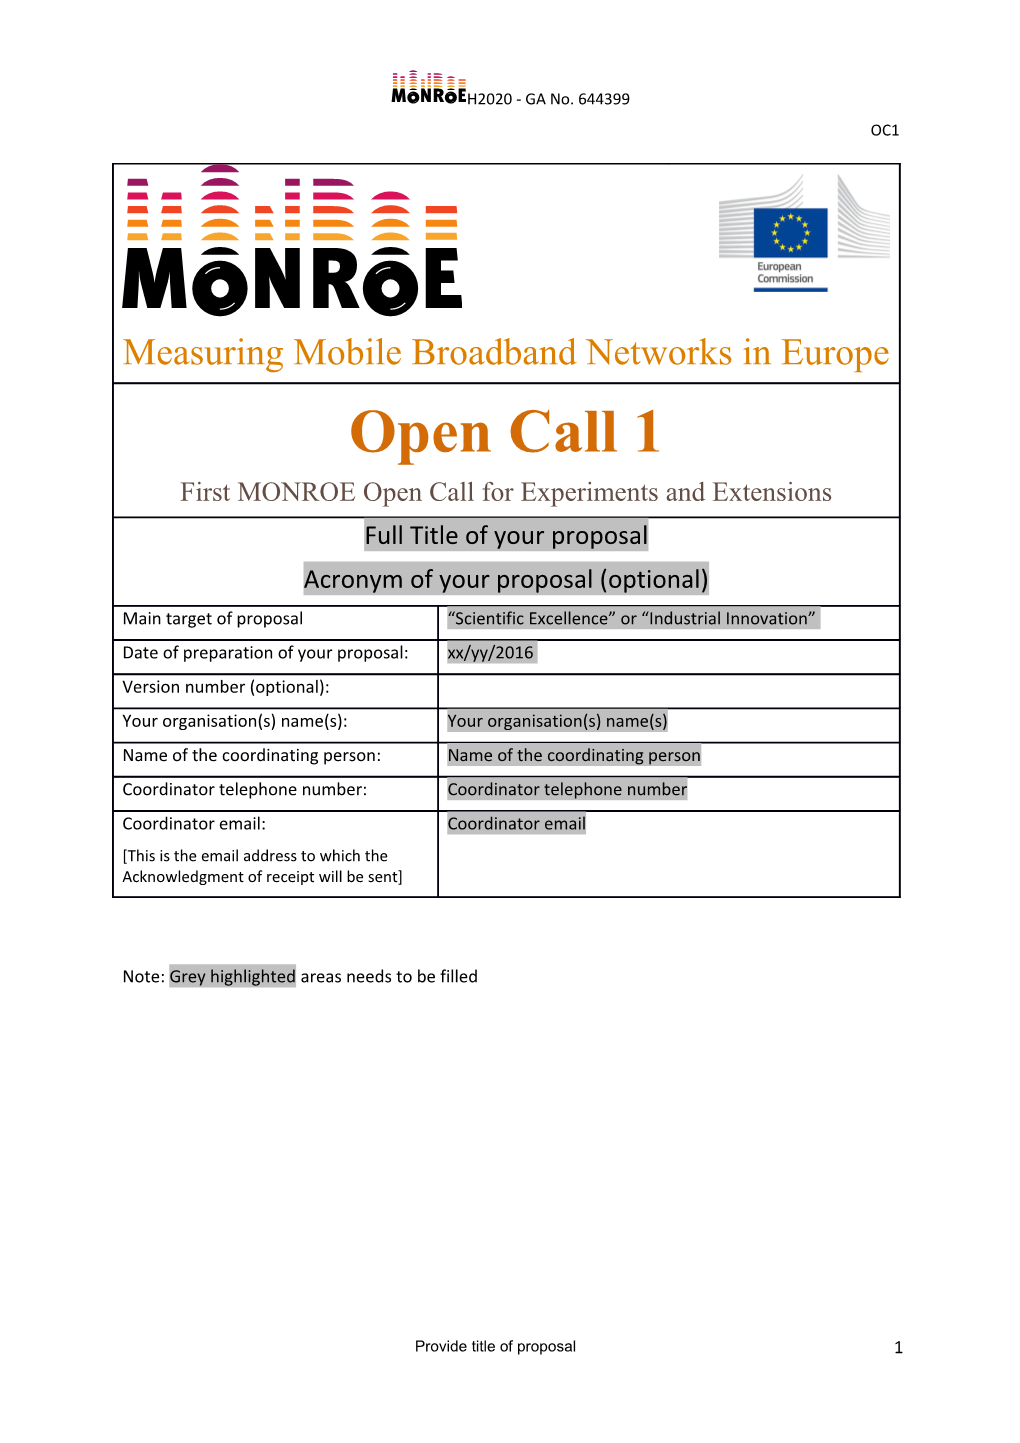 MONROE Open Call